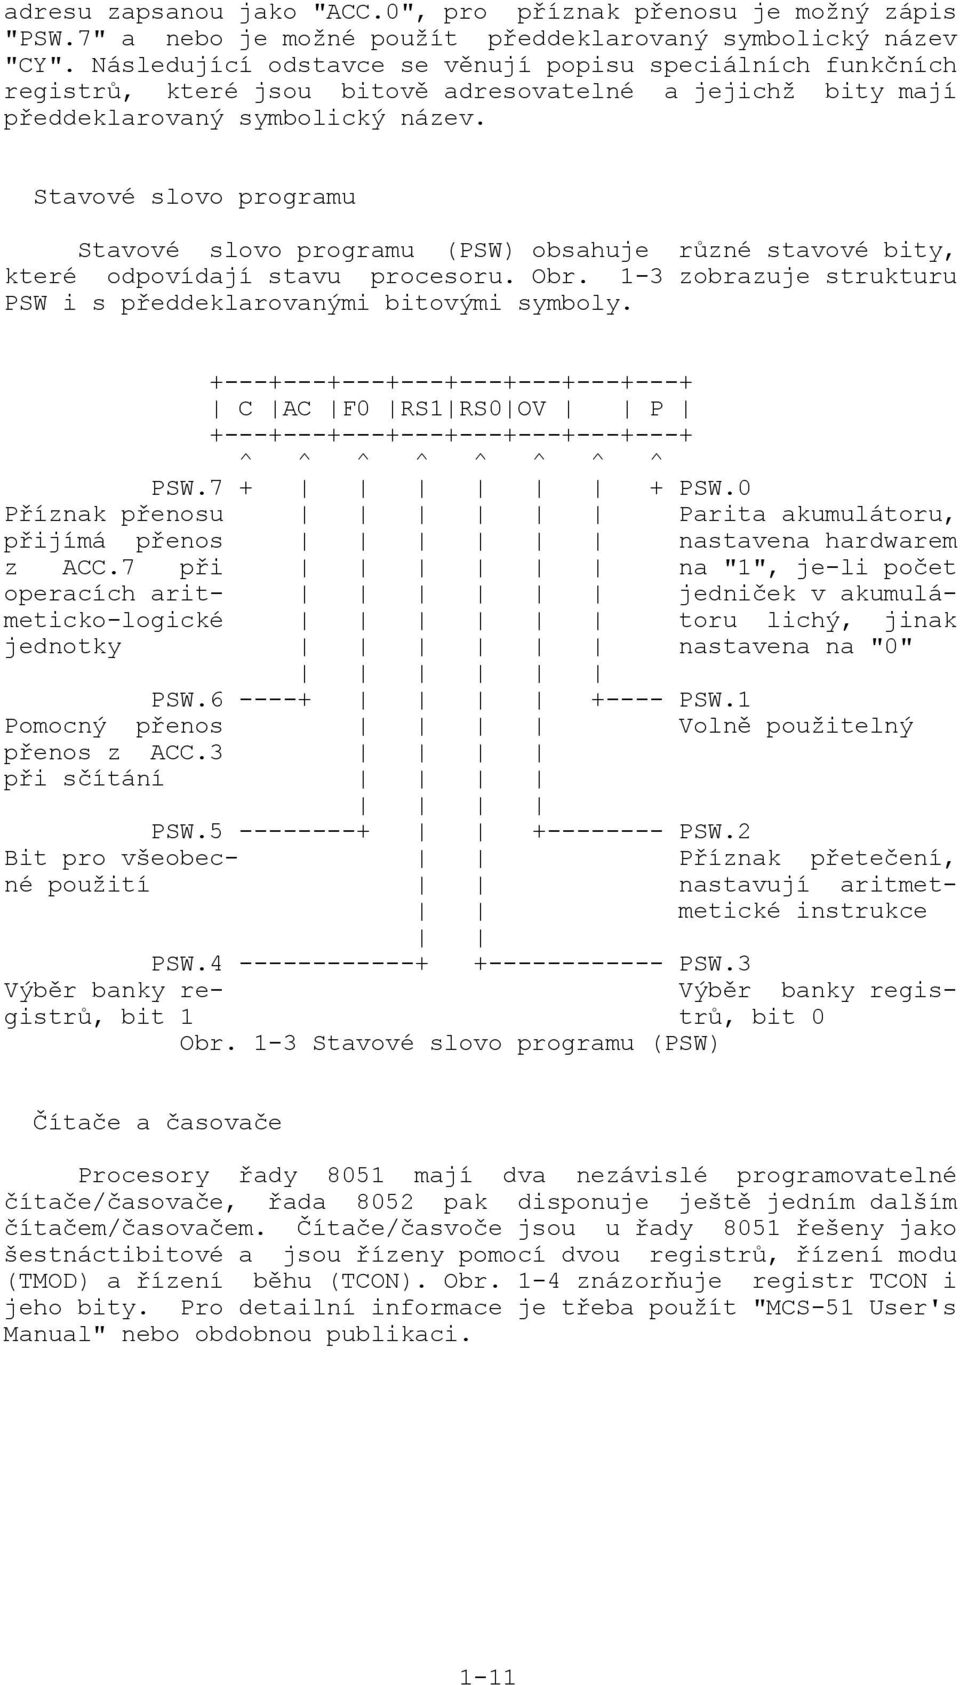 Stavové slovo programu Stavové slovo programu (PSW) obsahuje různé stavové bity, které odpovídají stavu procesoru. Obr. 1-3 zobrazuje strukturu PSW i s předdeklarovanými bitovými symboly.